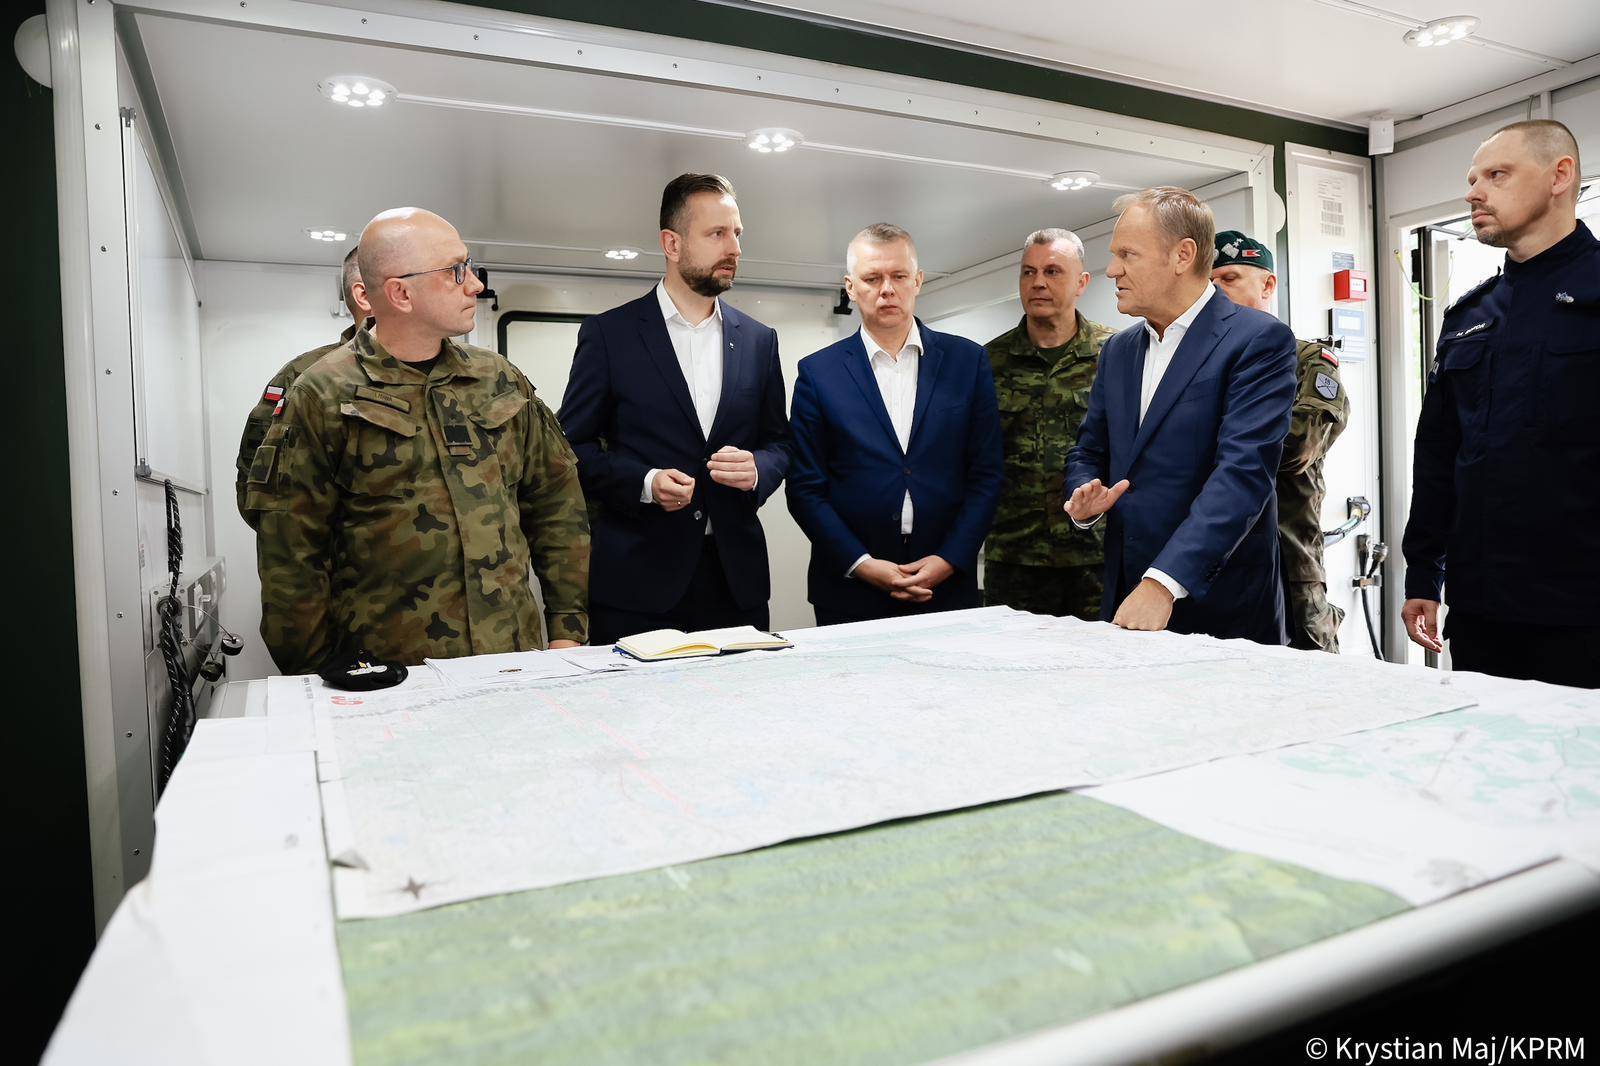 Politycy w marynarkach i wojskowi w mundurach rozmawiają nad mapą sztabową położoną na stole